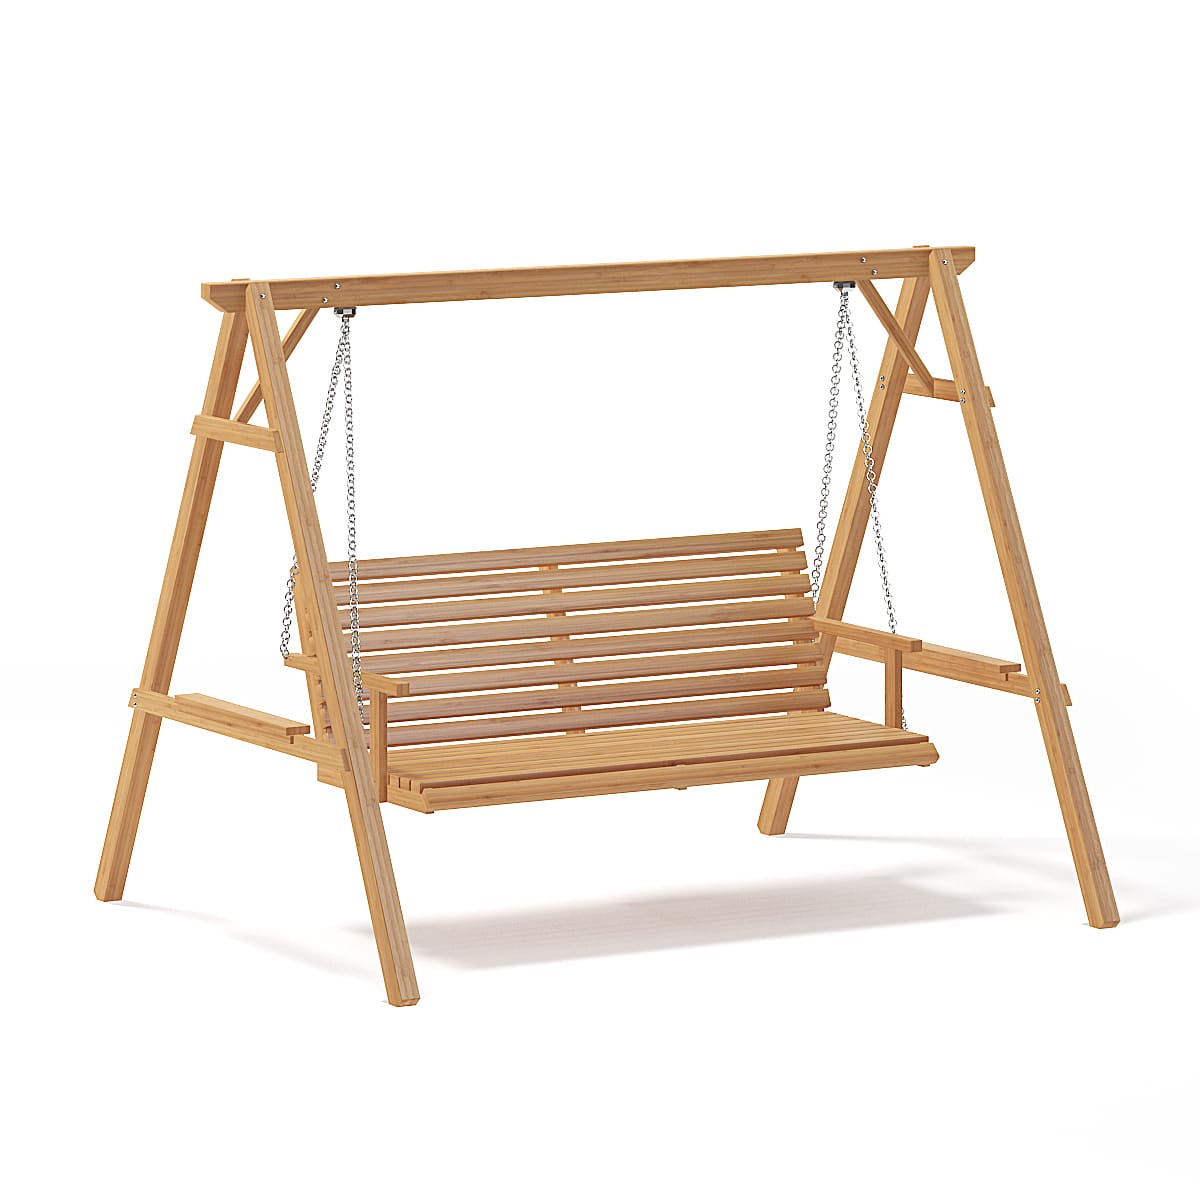 Wooden Garden Swing Chair 3d Model Cgaxis 3d Models Store